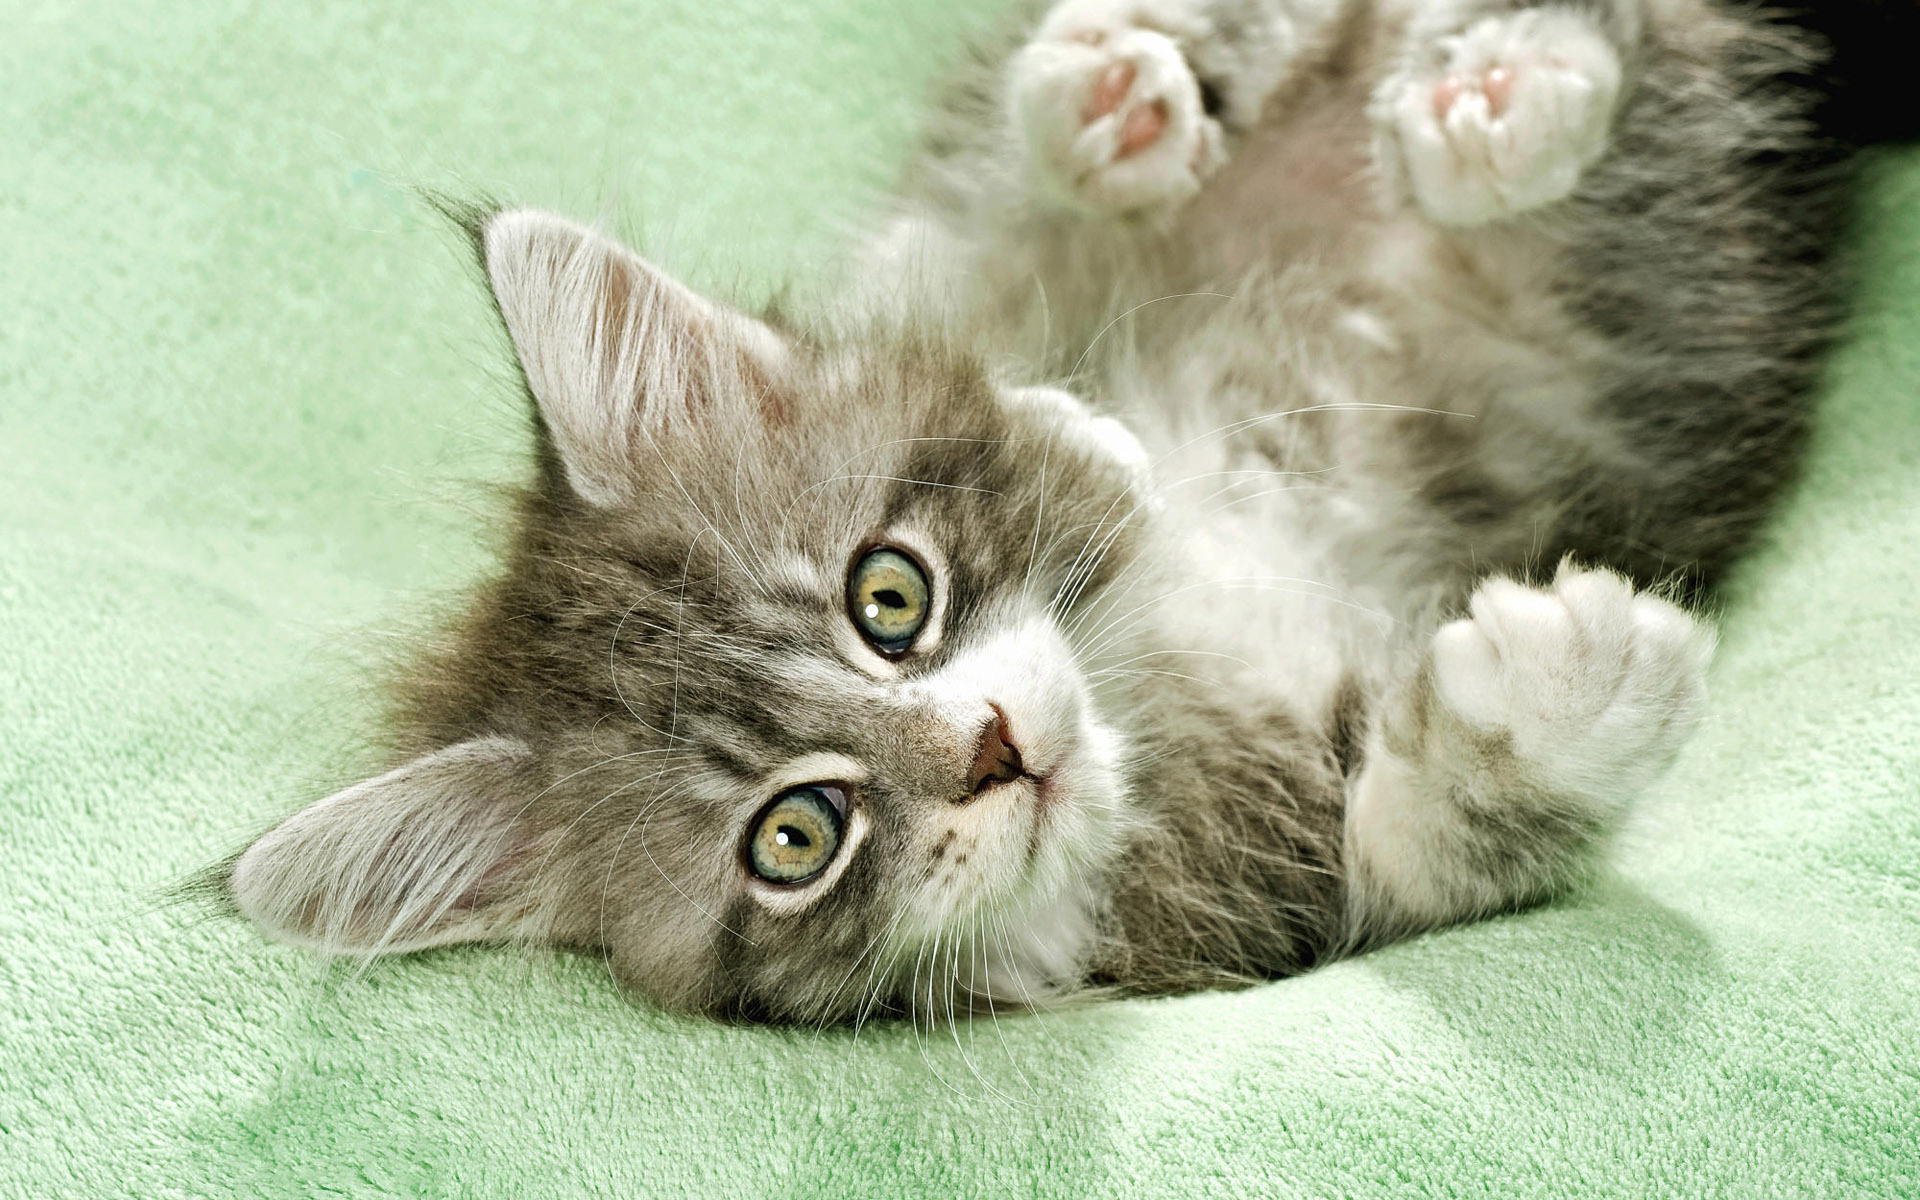 Cute Kitten Widescreen Wallpaper